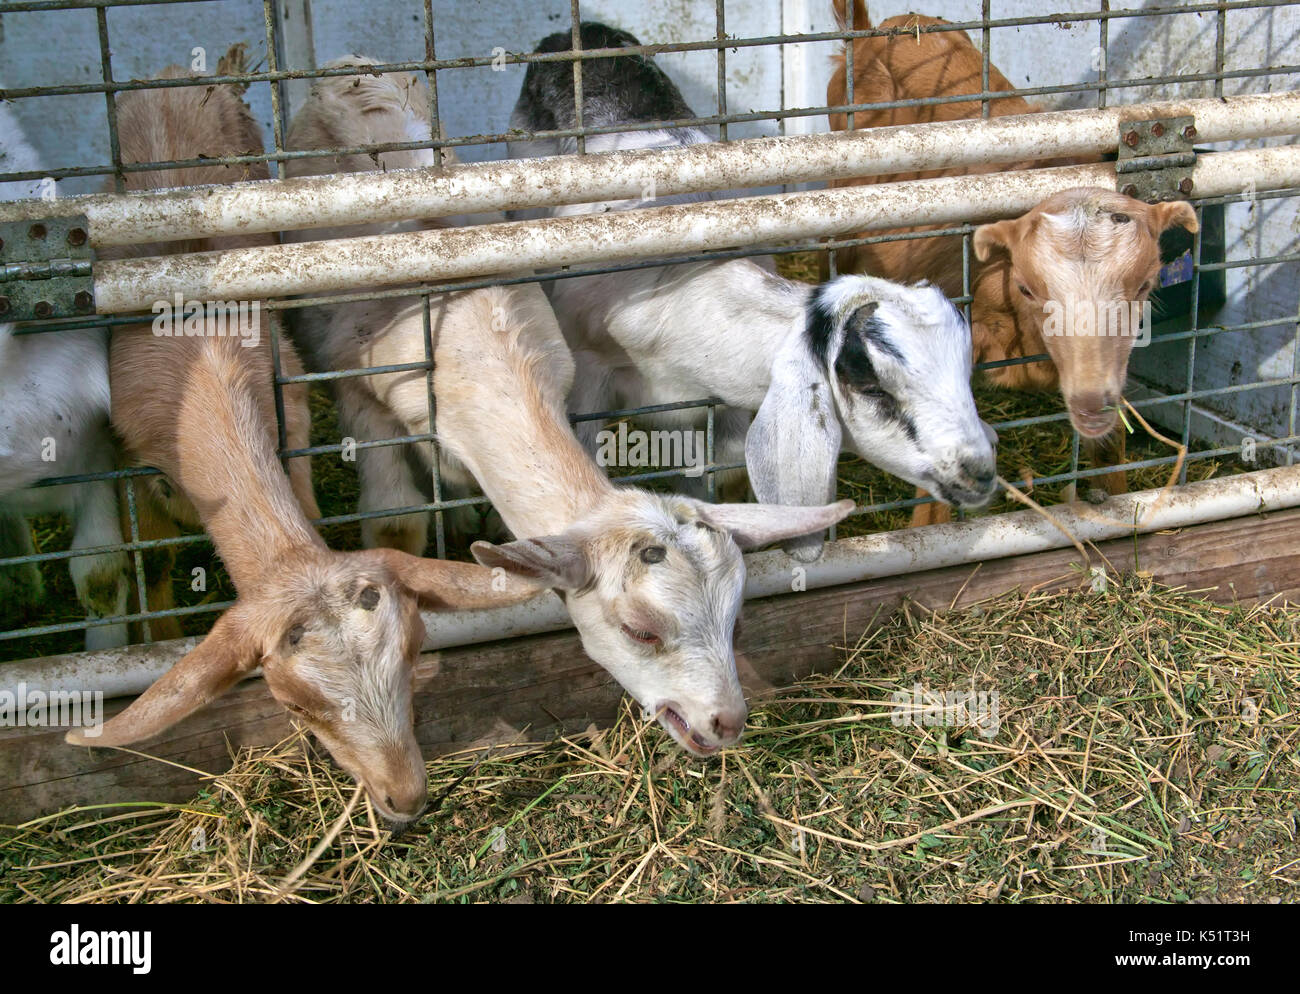 Niños, jóvenes cabras alimentándose de alfalfa, razas mixtas, granja de cabras lecheras. Foto de stock